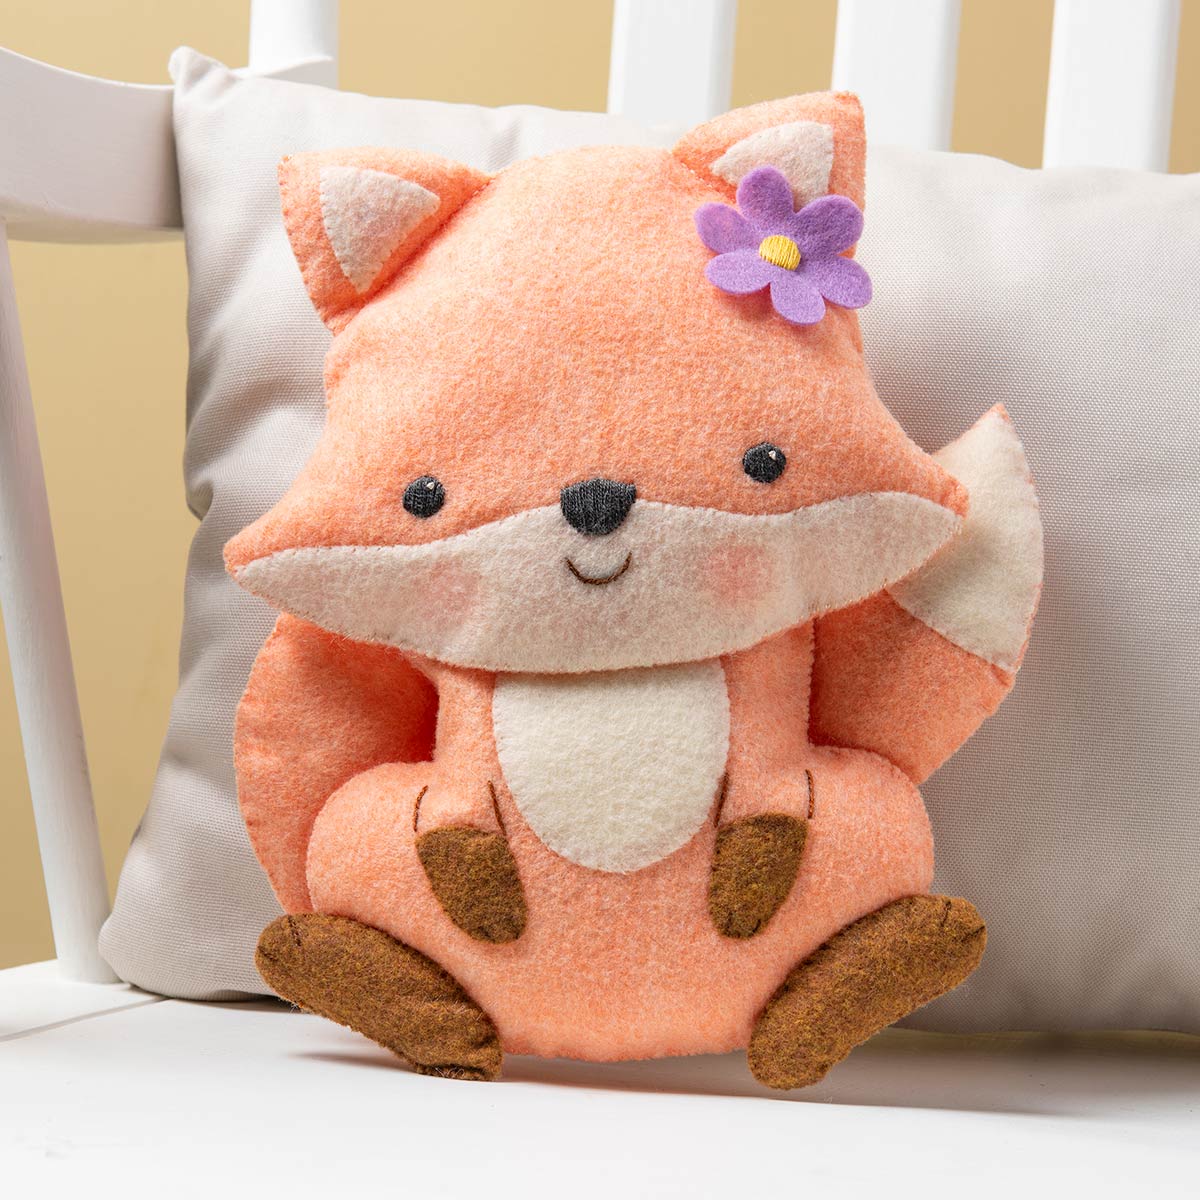 DIY Bucilla Woodland Floral Fox Baby Shower Gift Felt Pillow Craft Kit 49213E